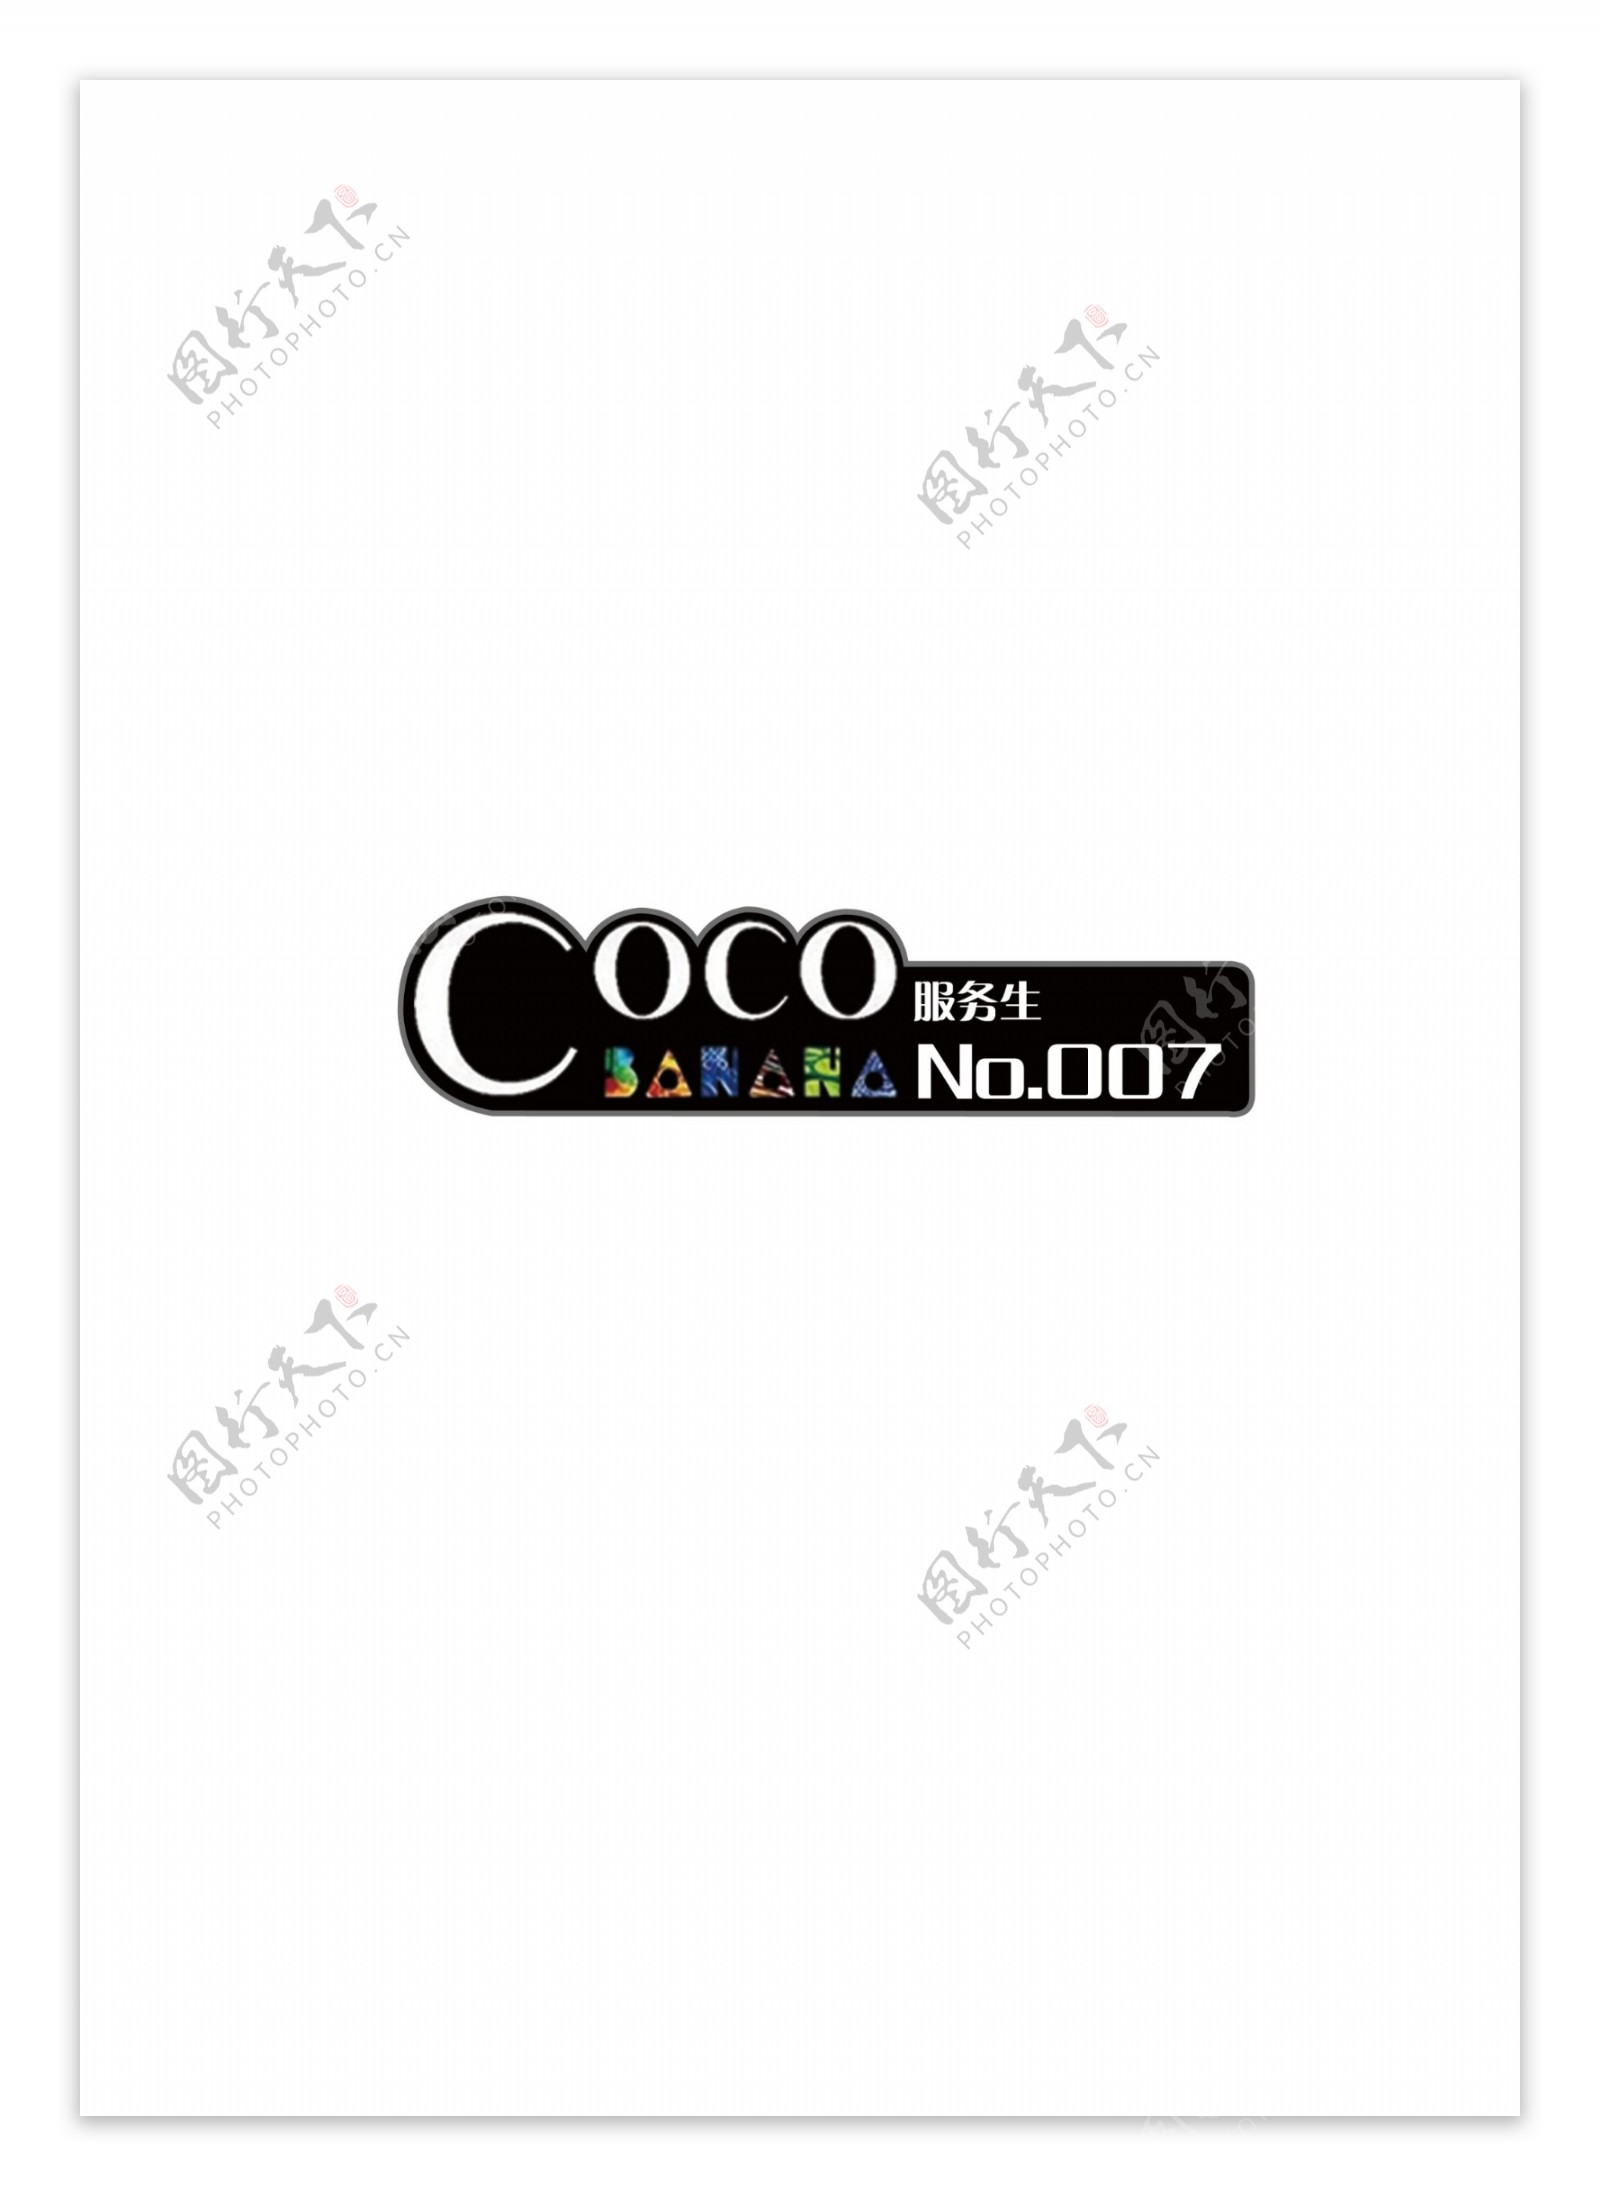 COCOBANANA俱乐部胸牌卡图片